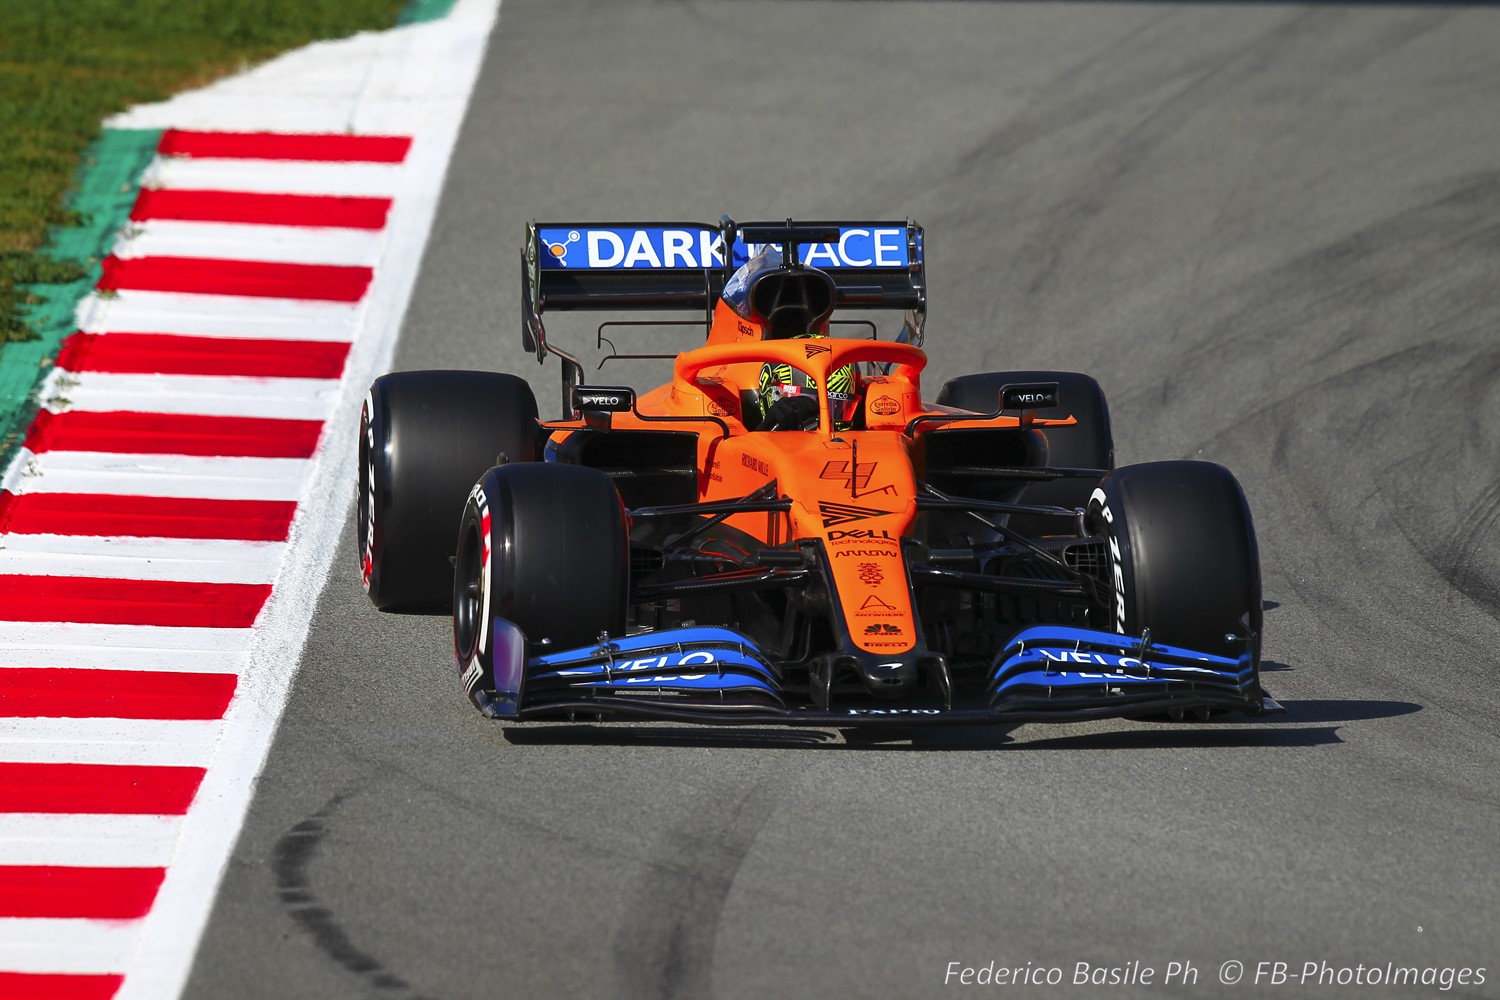 2020 McLaren F1 car